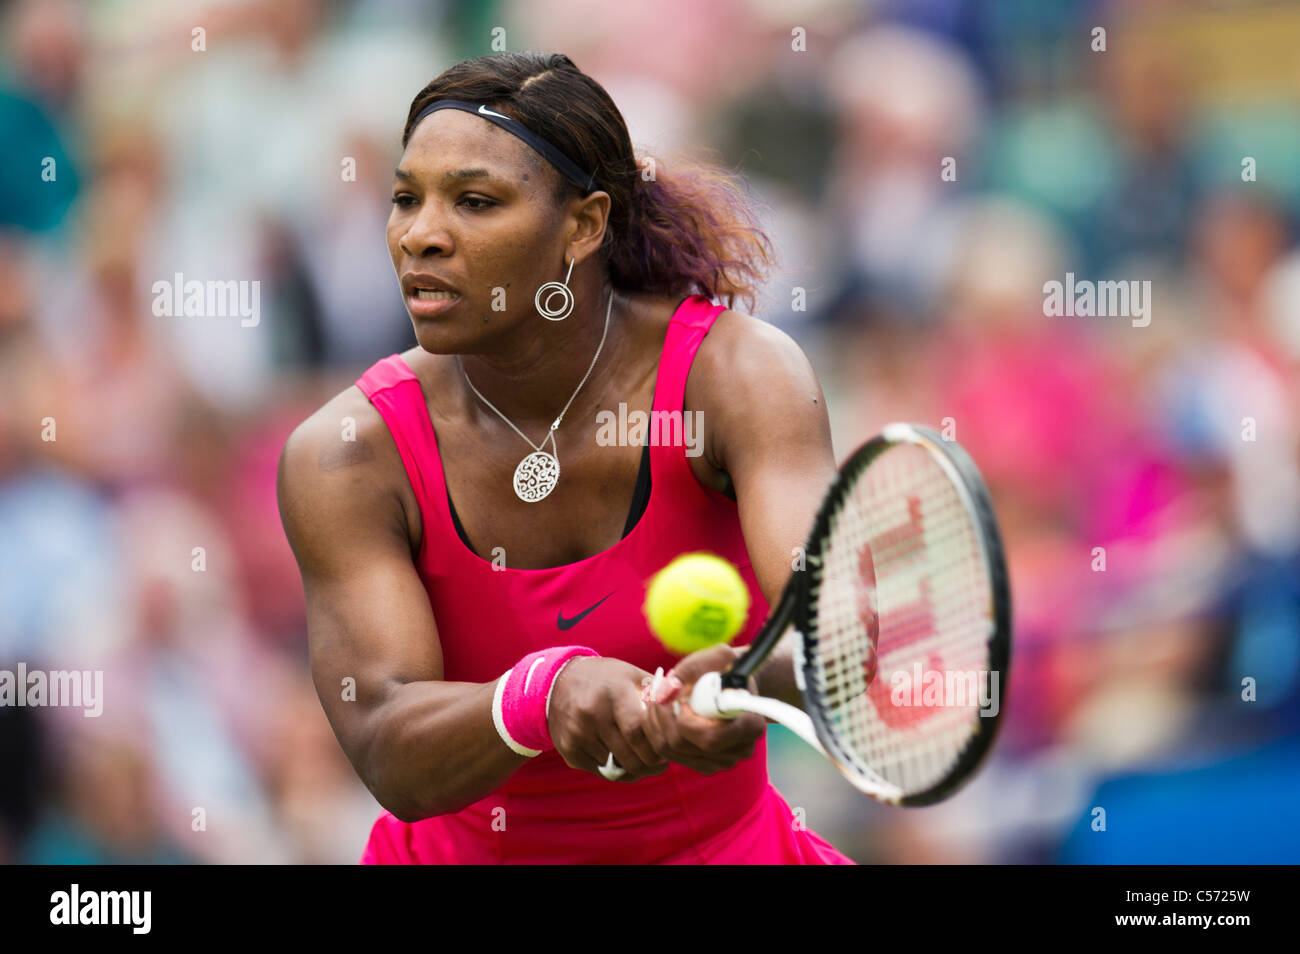 Tournoi international de tennis, Aegon 2011 Eastbourne, East Sussex. Serena Williams de USA. Banque D'Images